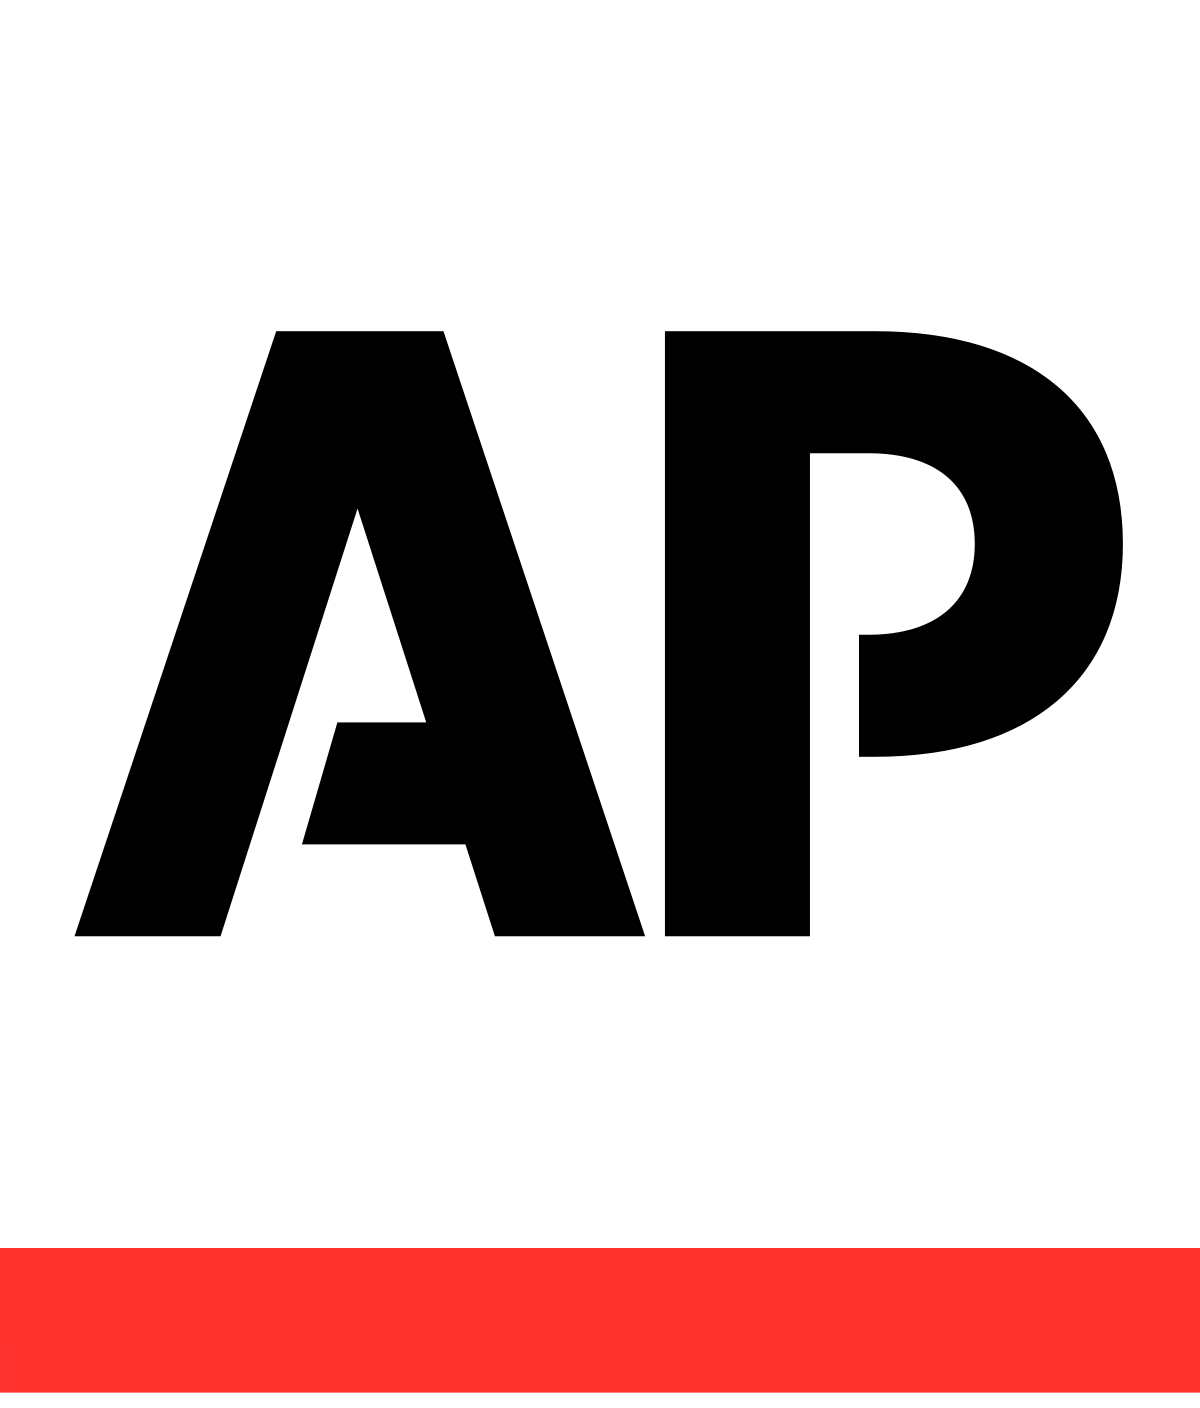 Associated Press - Wikipedia, la enciclopedia libre